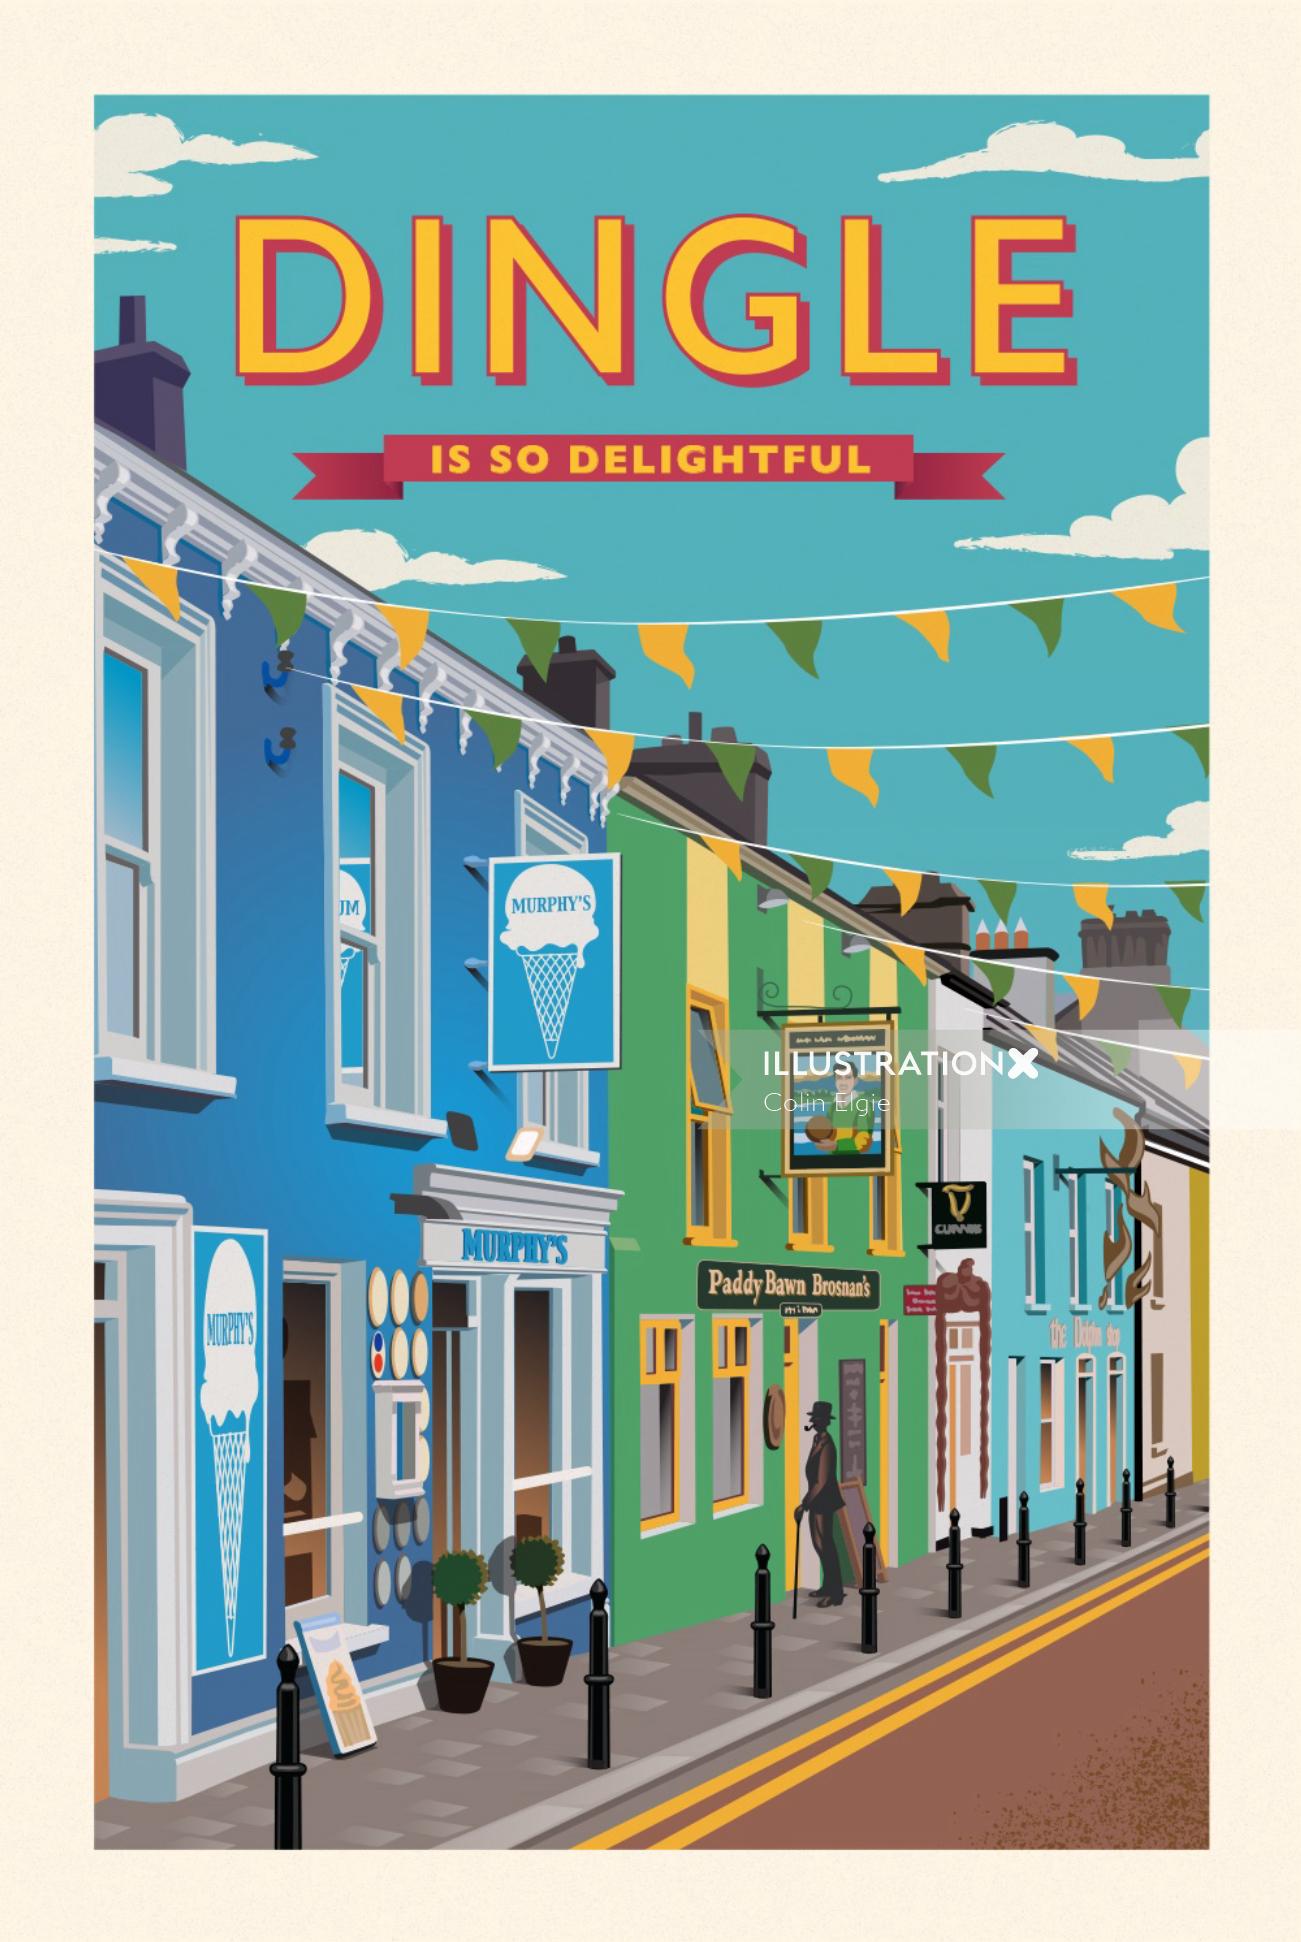 Cartel que muestra una colorida escena callejera en Dingle, Irlanda